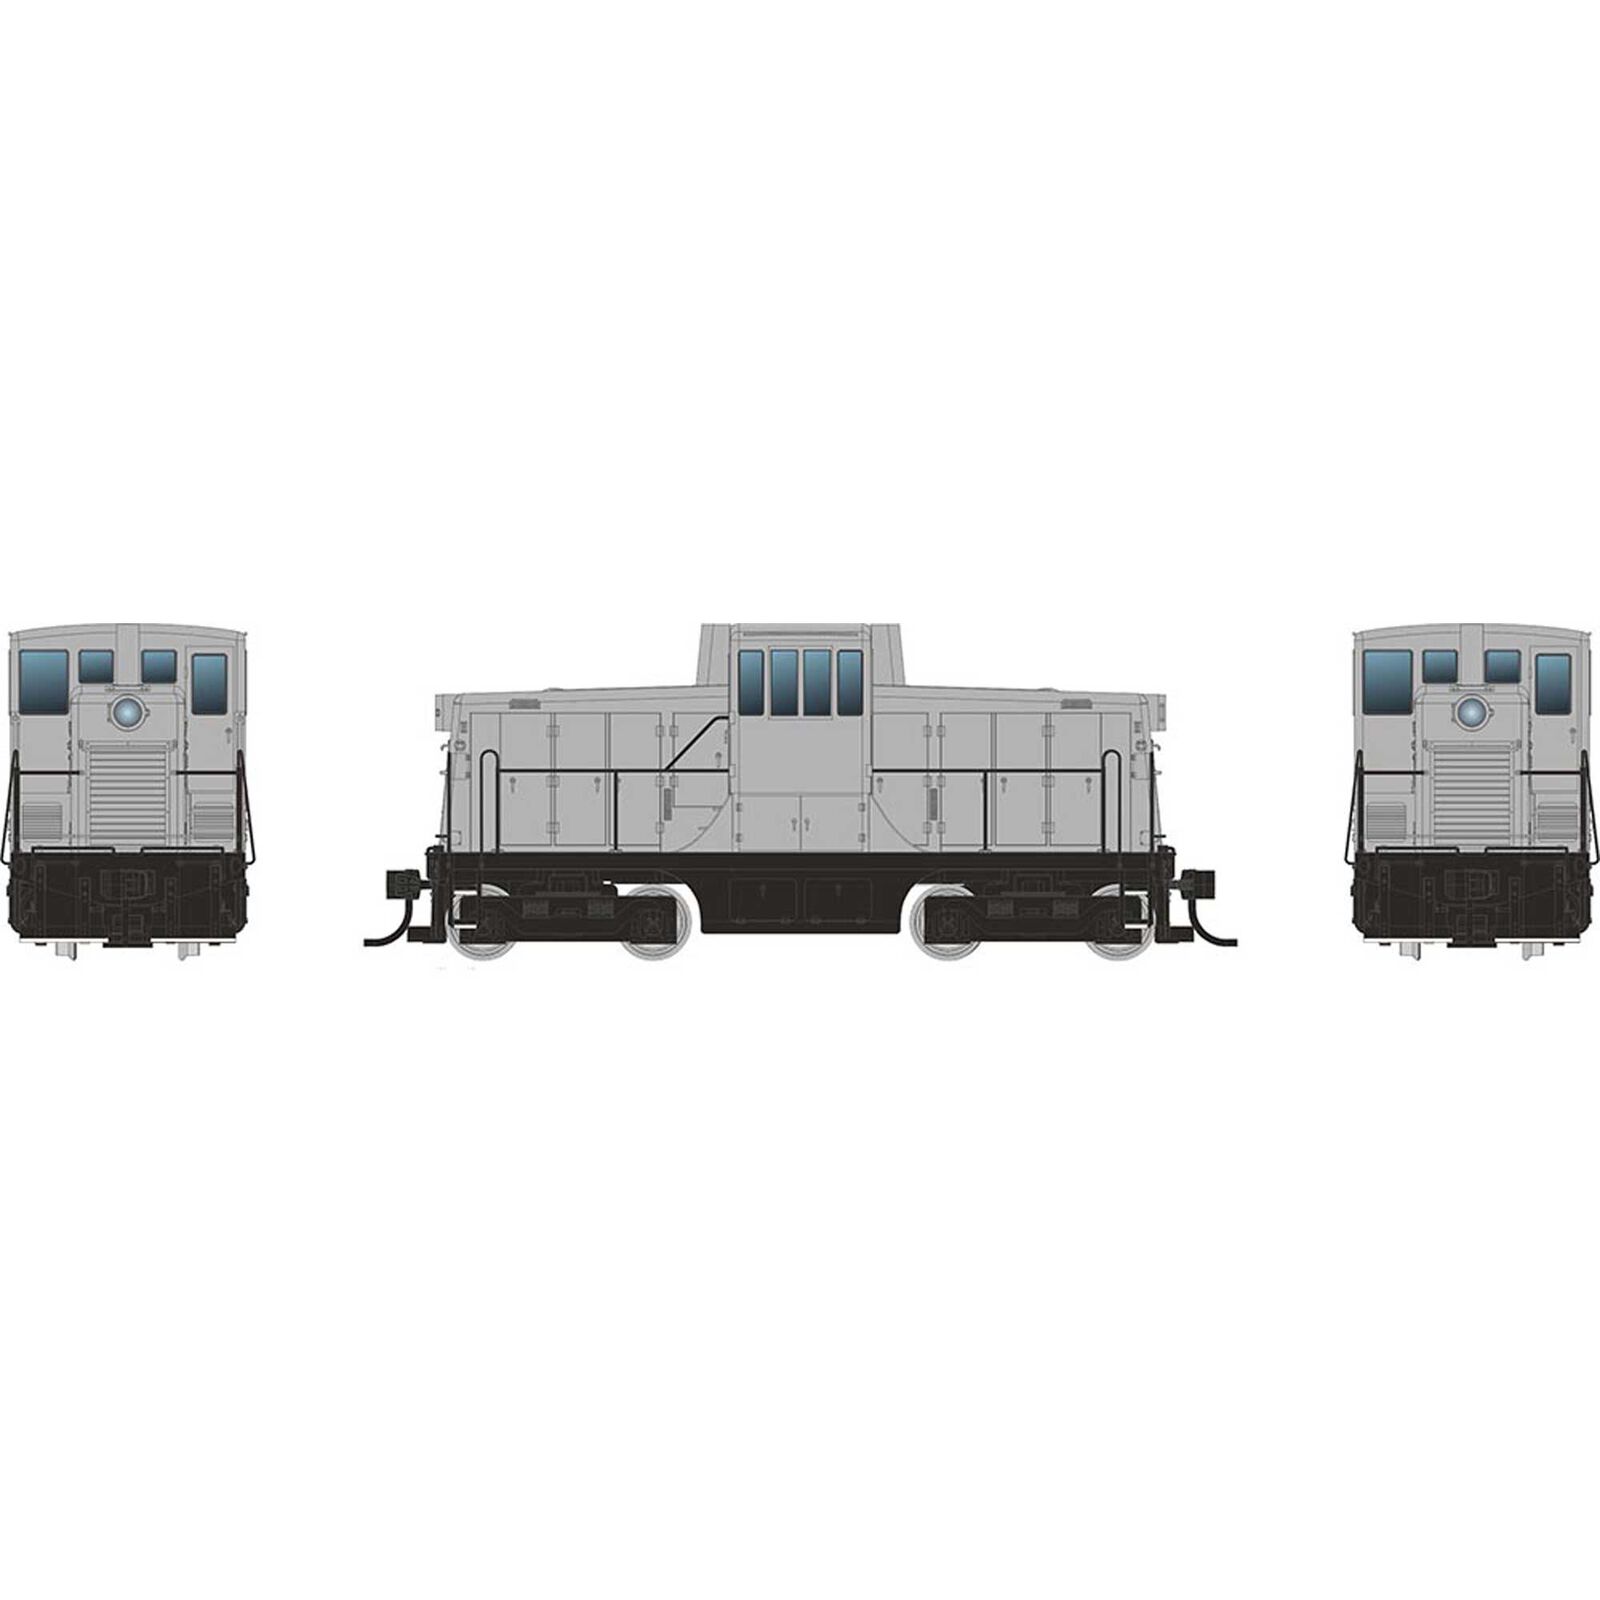 HO GE 44 Tonner Switcher Locomotive, Undecorated Phase III Body